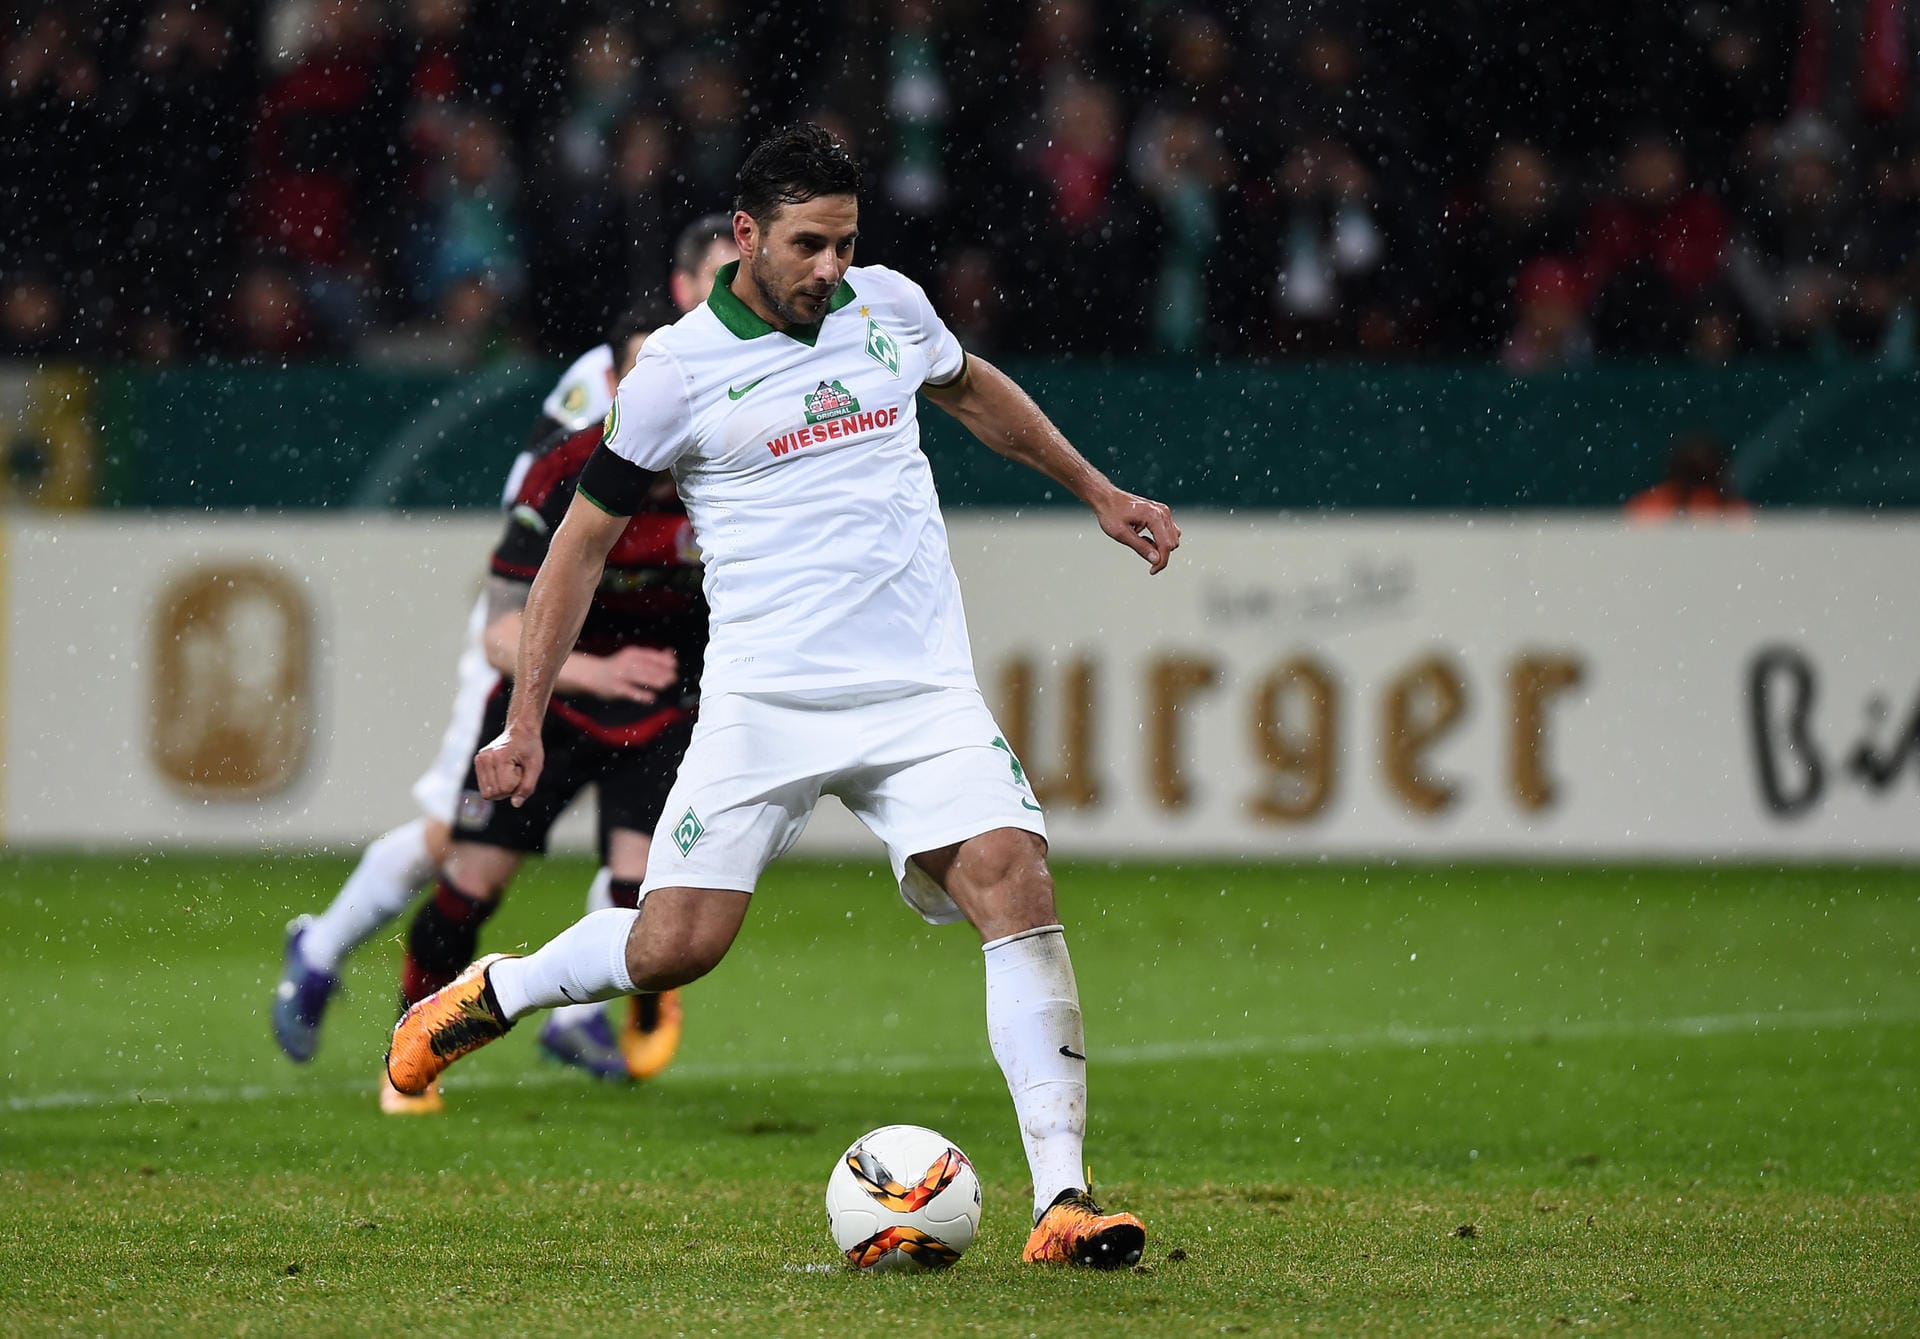 Den fälligen Elfmeter verwandelt Werders Routinier Claudio Pizarro souervän zum 2:1 für die Hanseaten.